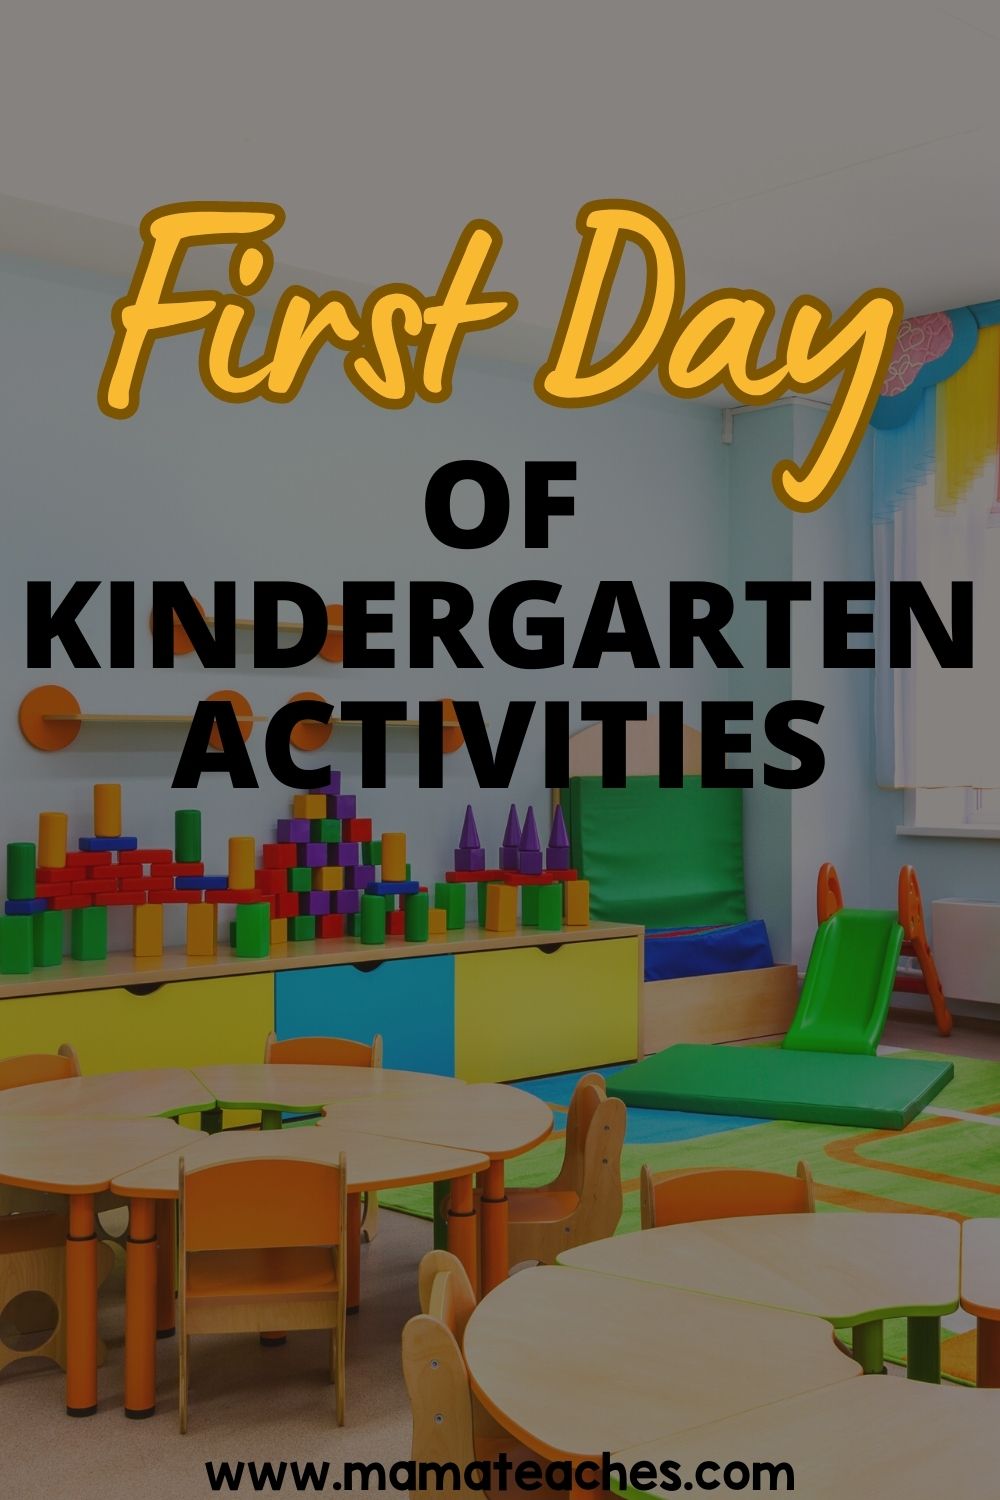 First Day of Kindergarten Activities